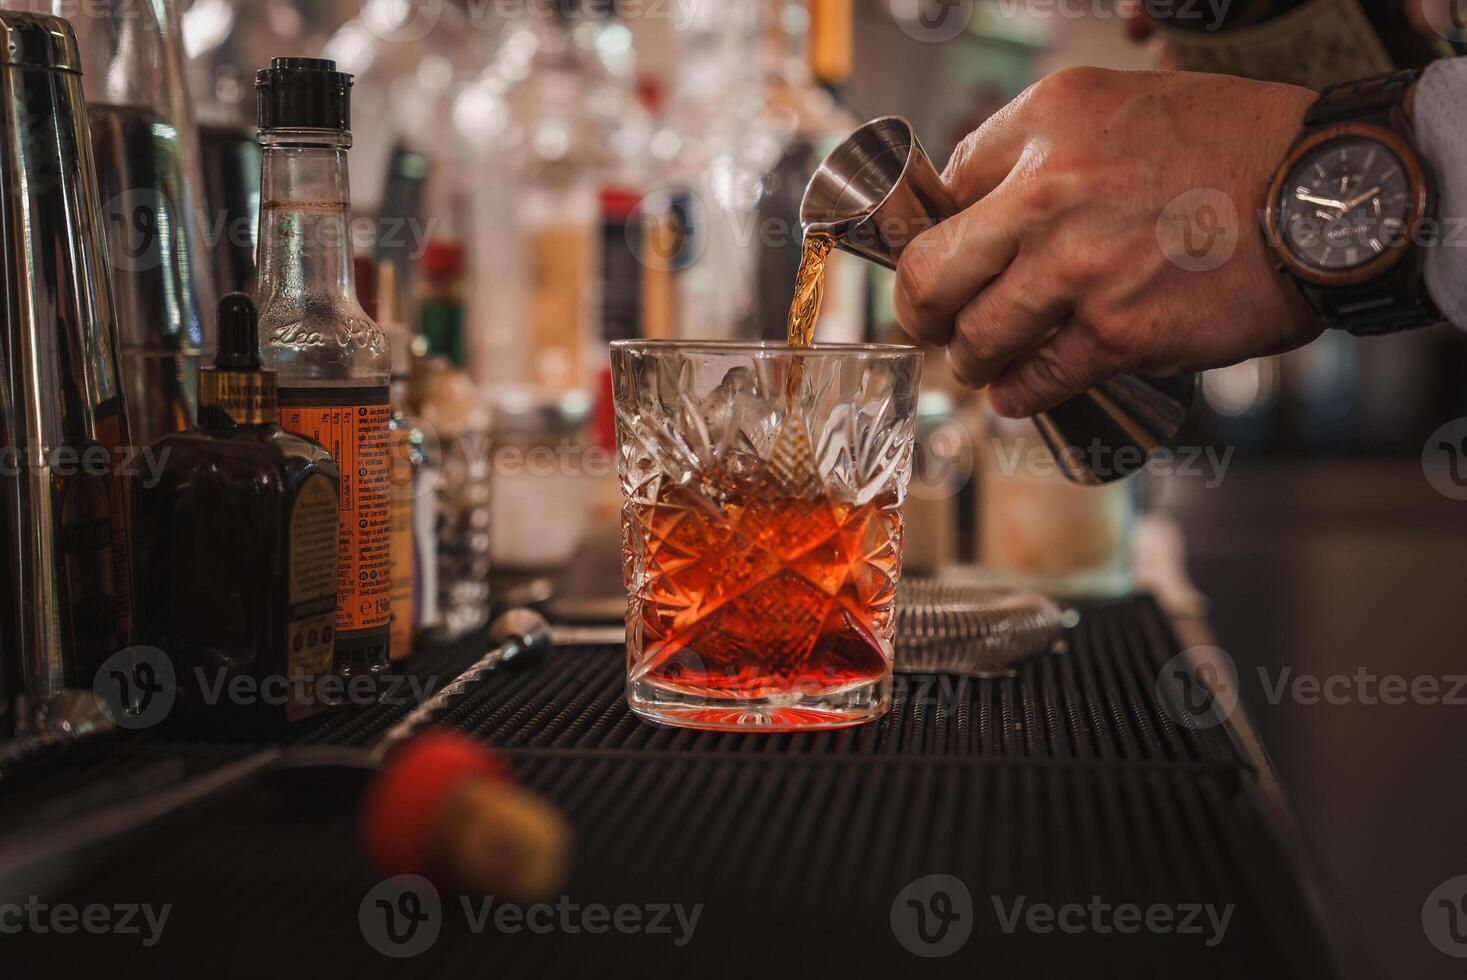 venetian bartender häller lyxig alkoholhaltig dryck in i Martini glas i eleganta miljö foto